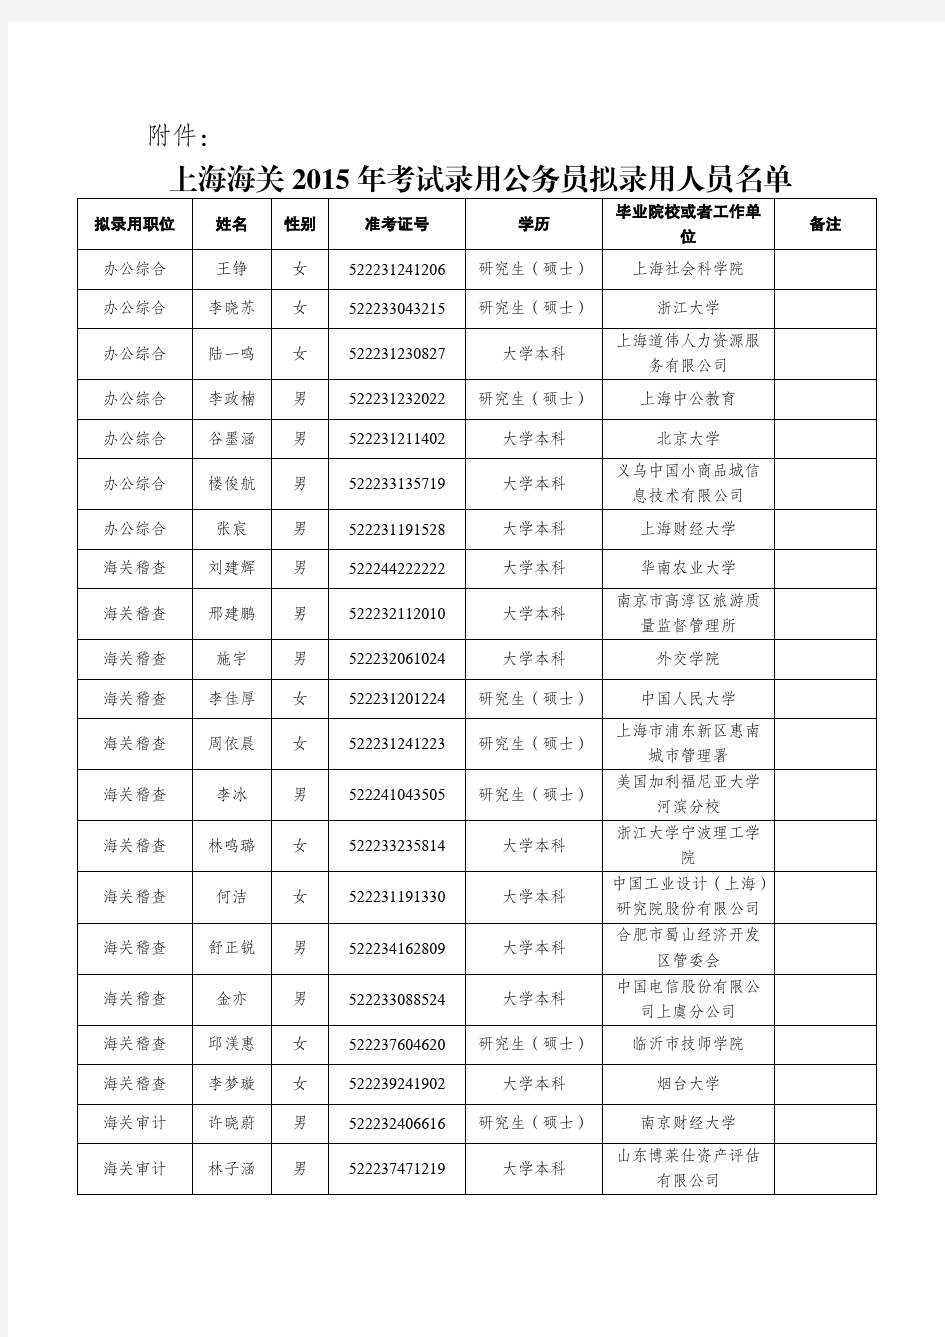 上海海关2015年度考试录用公务员拟录用人员公示公告pdf